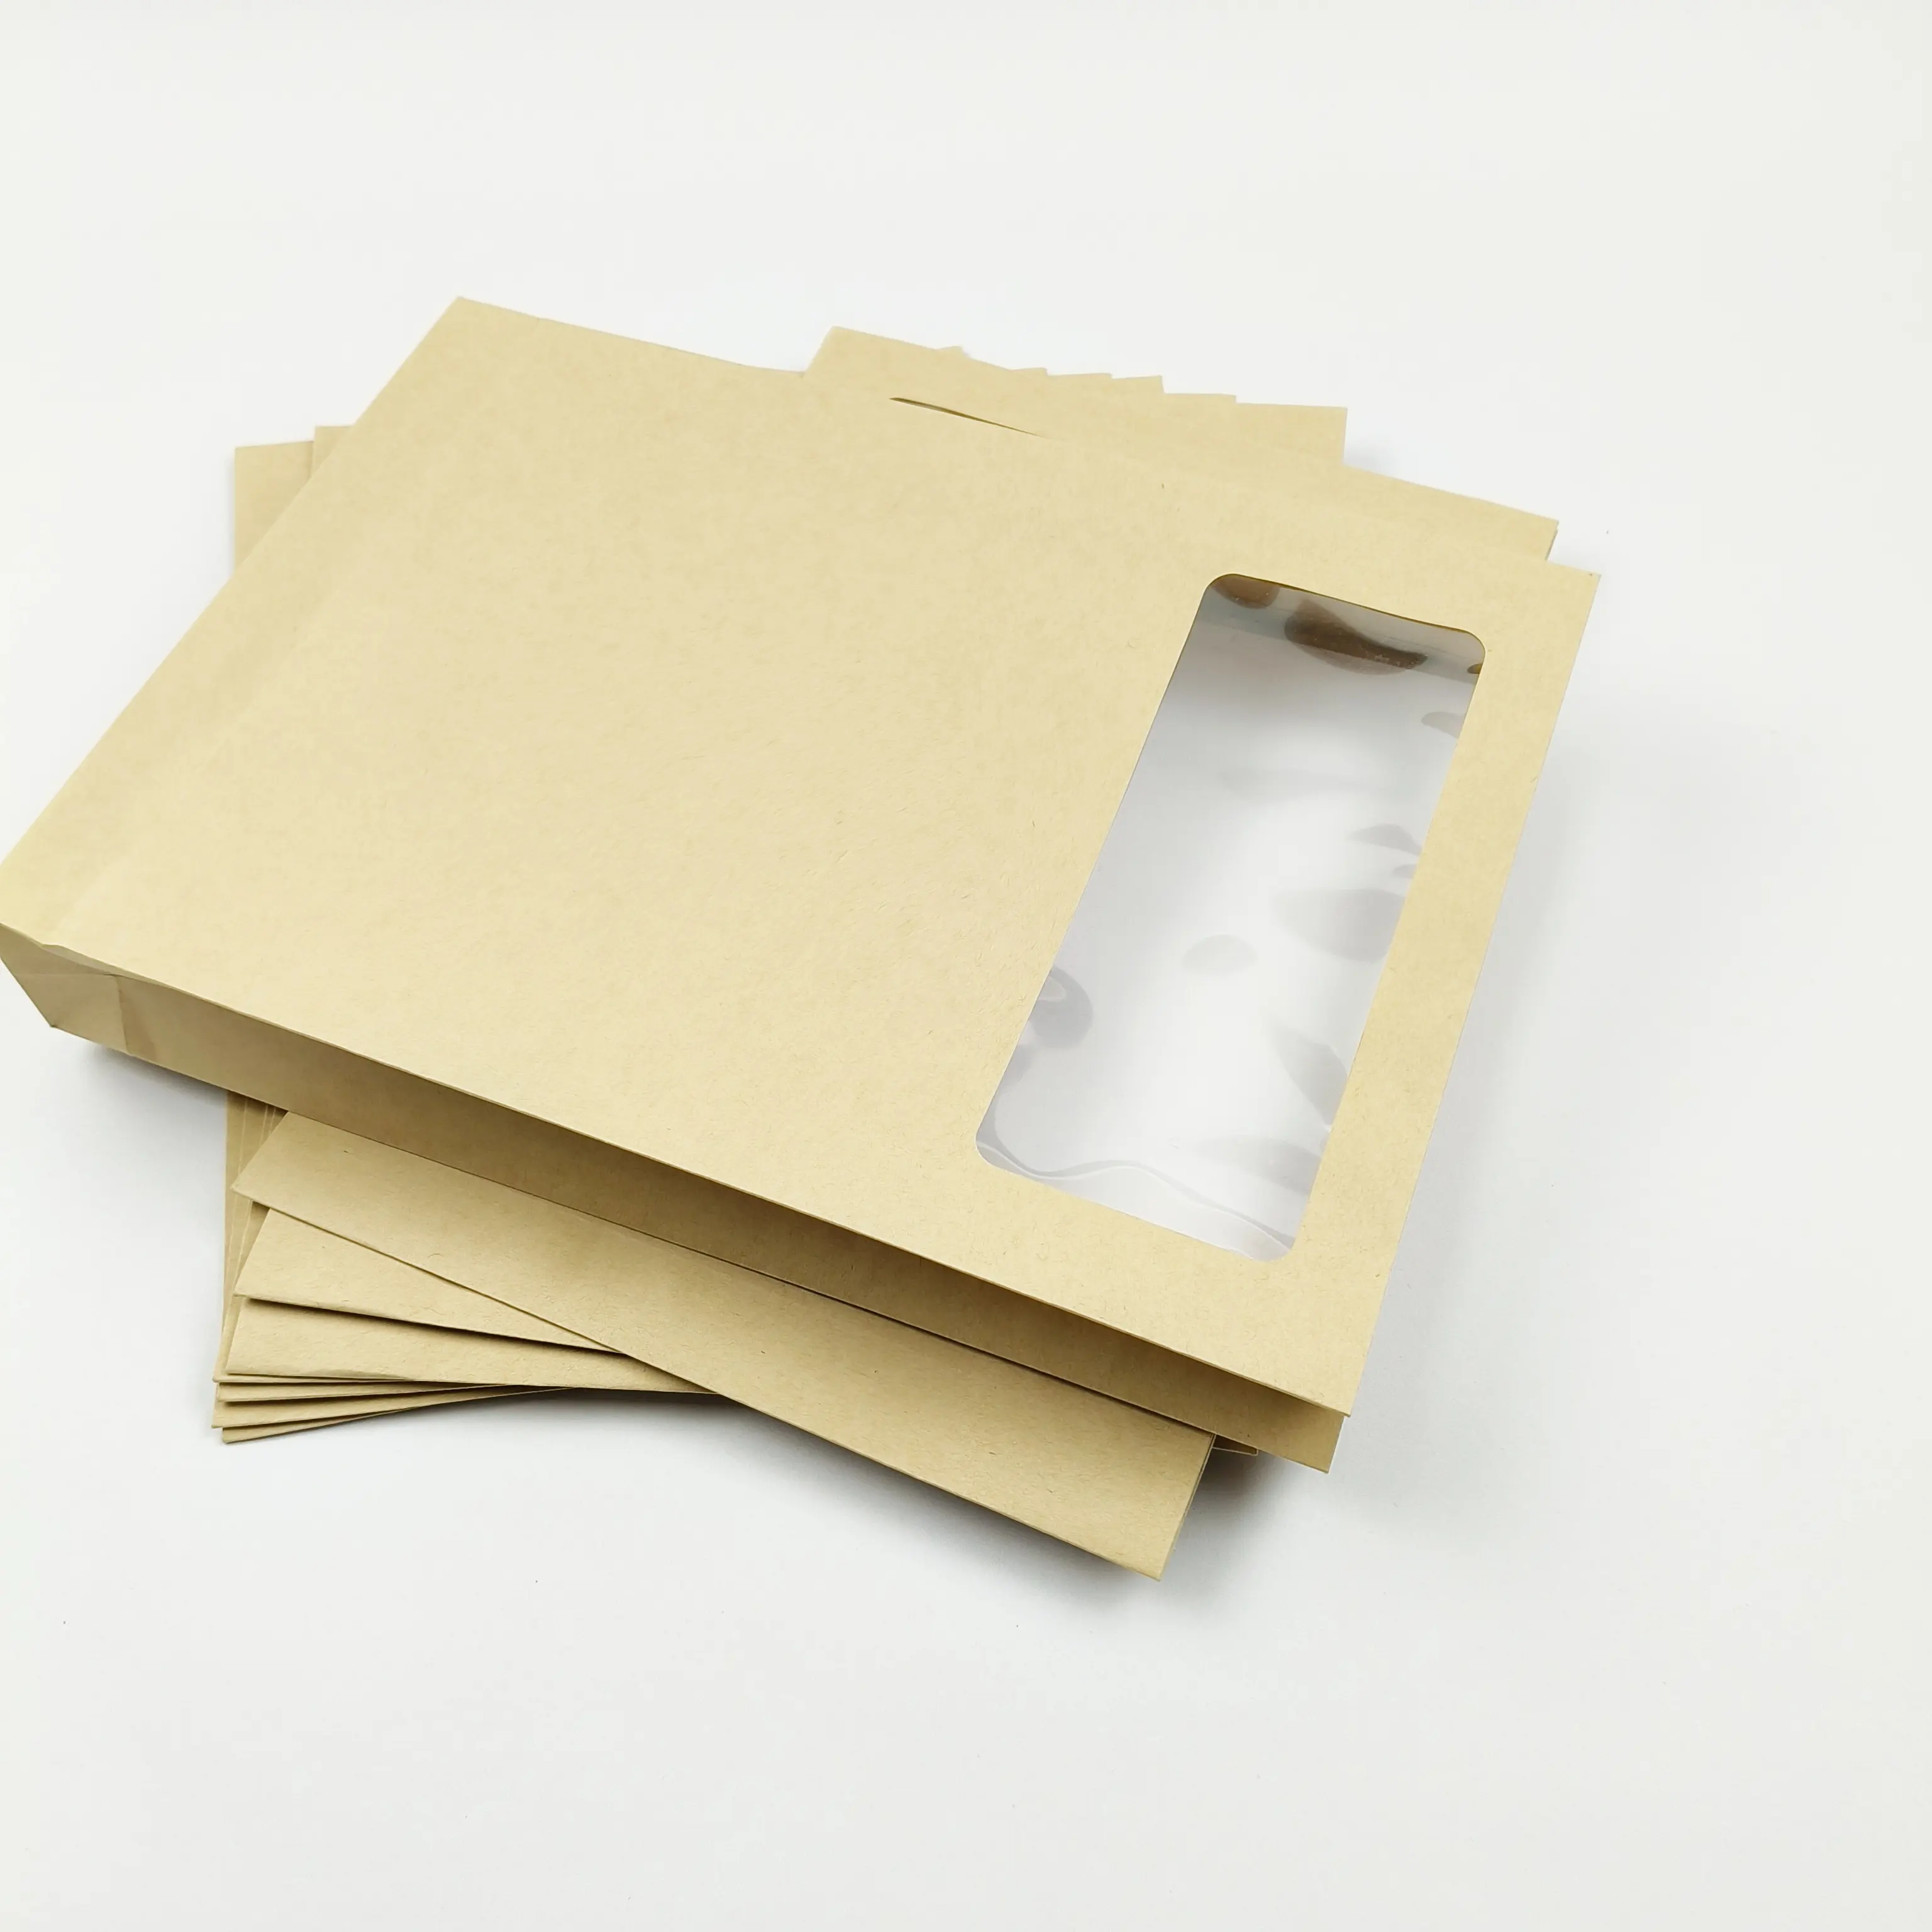 Grosir harga murah dapat digunakan kembali dokumen kertas besar kertas kraft putih coklat pengiriman kertas kotak dokumen amplop